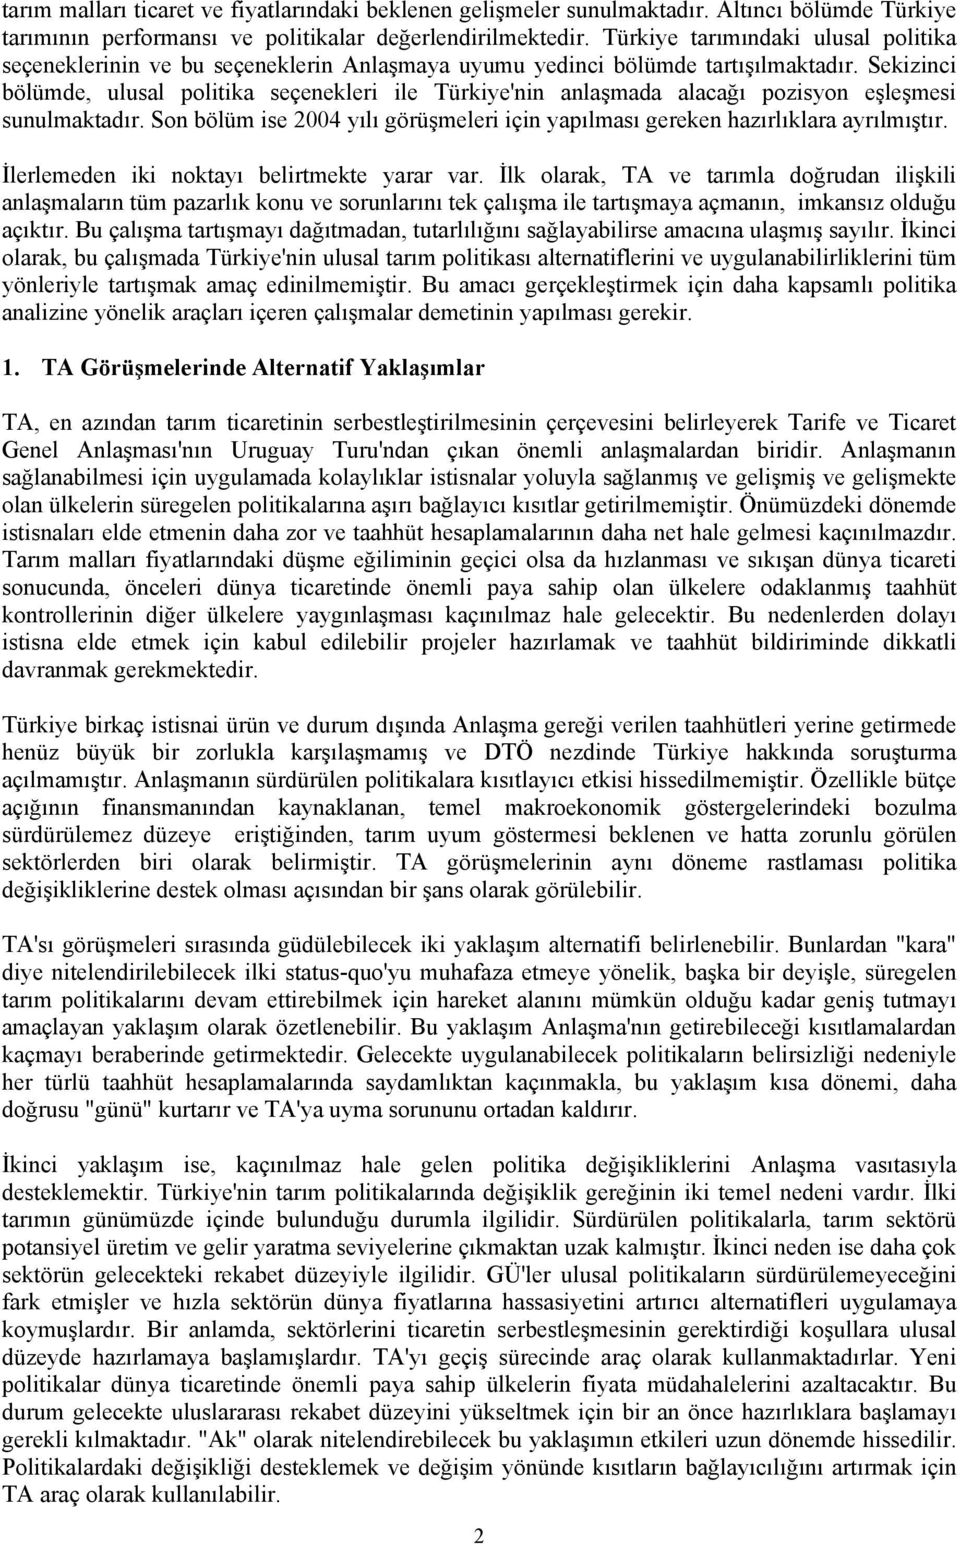 Sekizinci bölümde, ulusal politika seçenekleri ile Türkiye'nin anlaşmada alacağı pozisyon eşleşmesi sunulmaktadır. Son bölüm ise 2004 yılı görüşmeleri için yapılması gereken hazırlıklara ayrılmıştır.